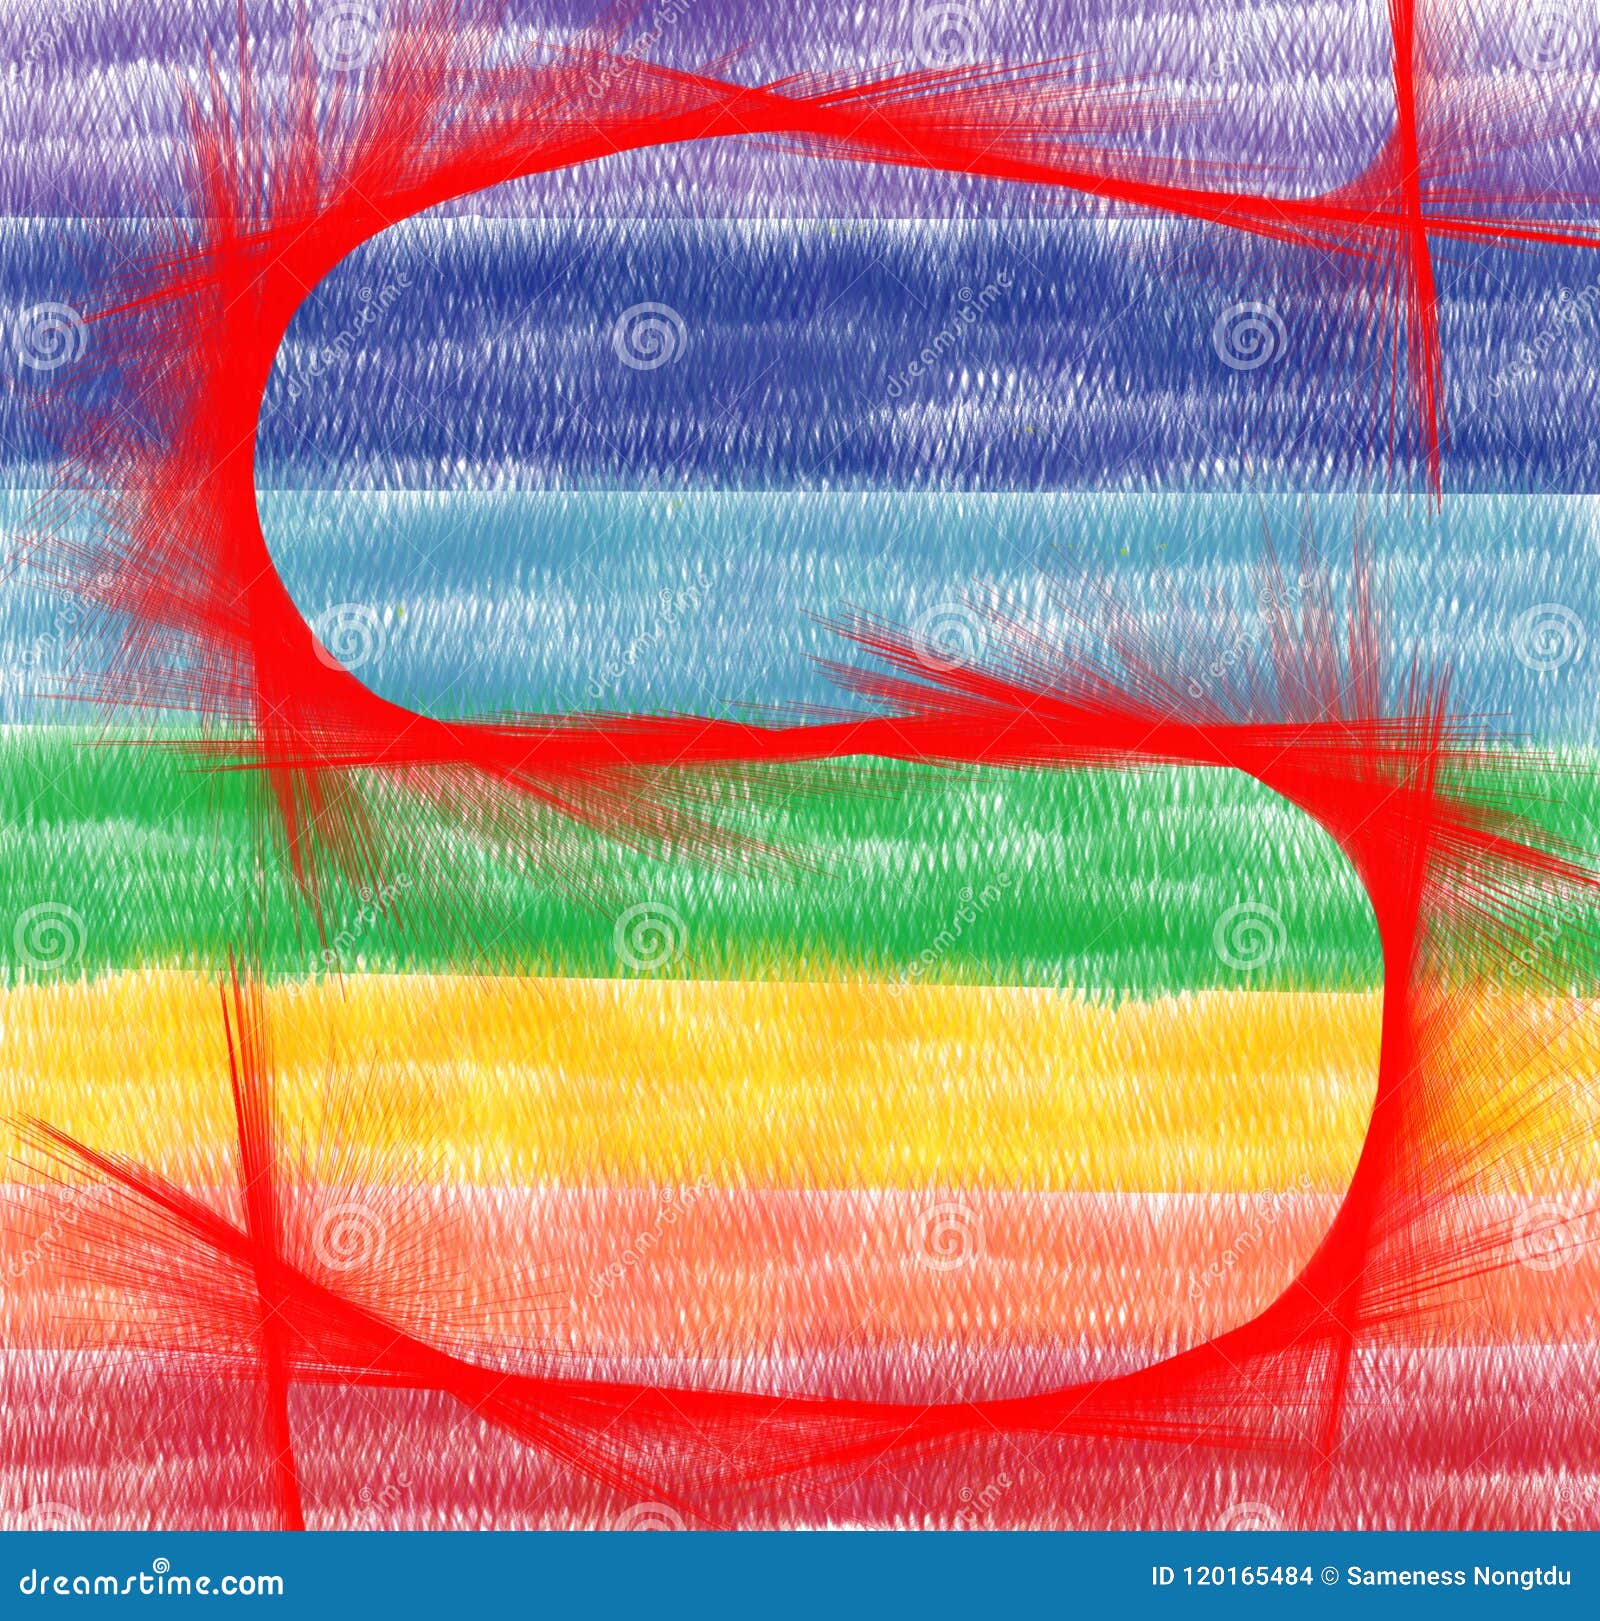 Rainbow Vibgyor Logo Vector Images (14)